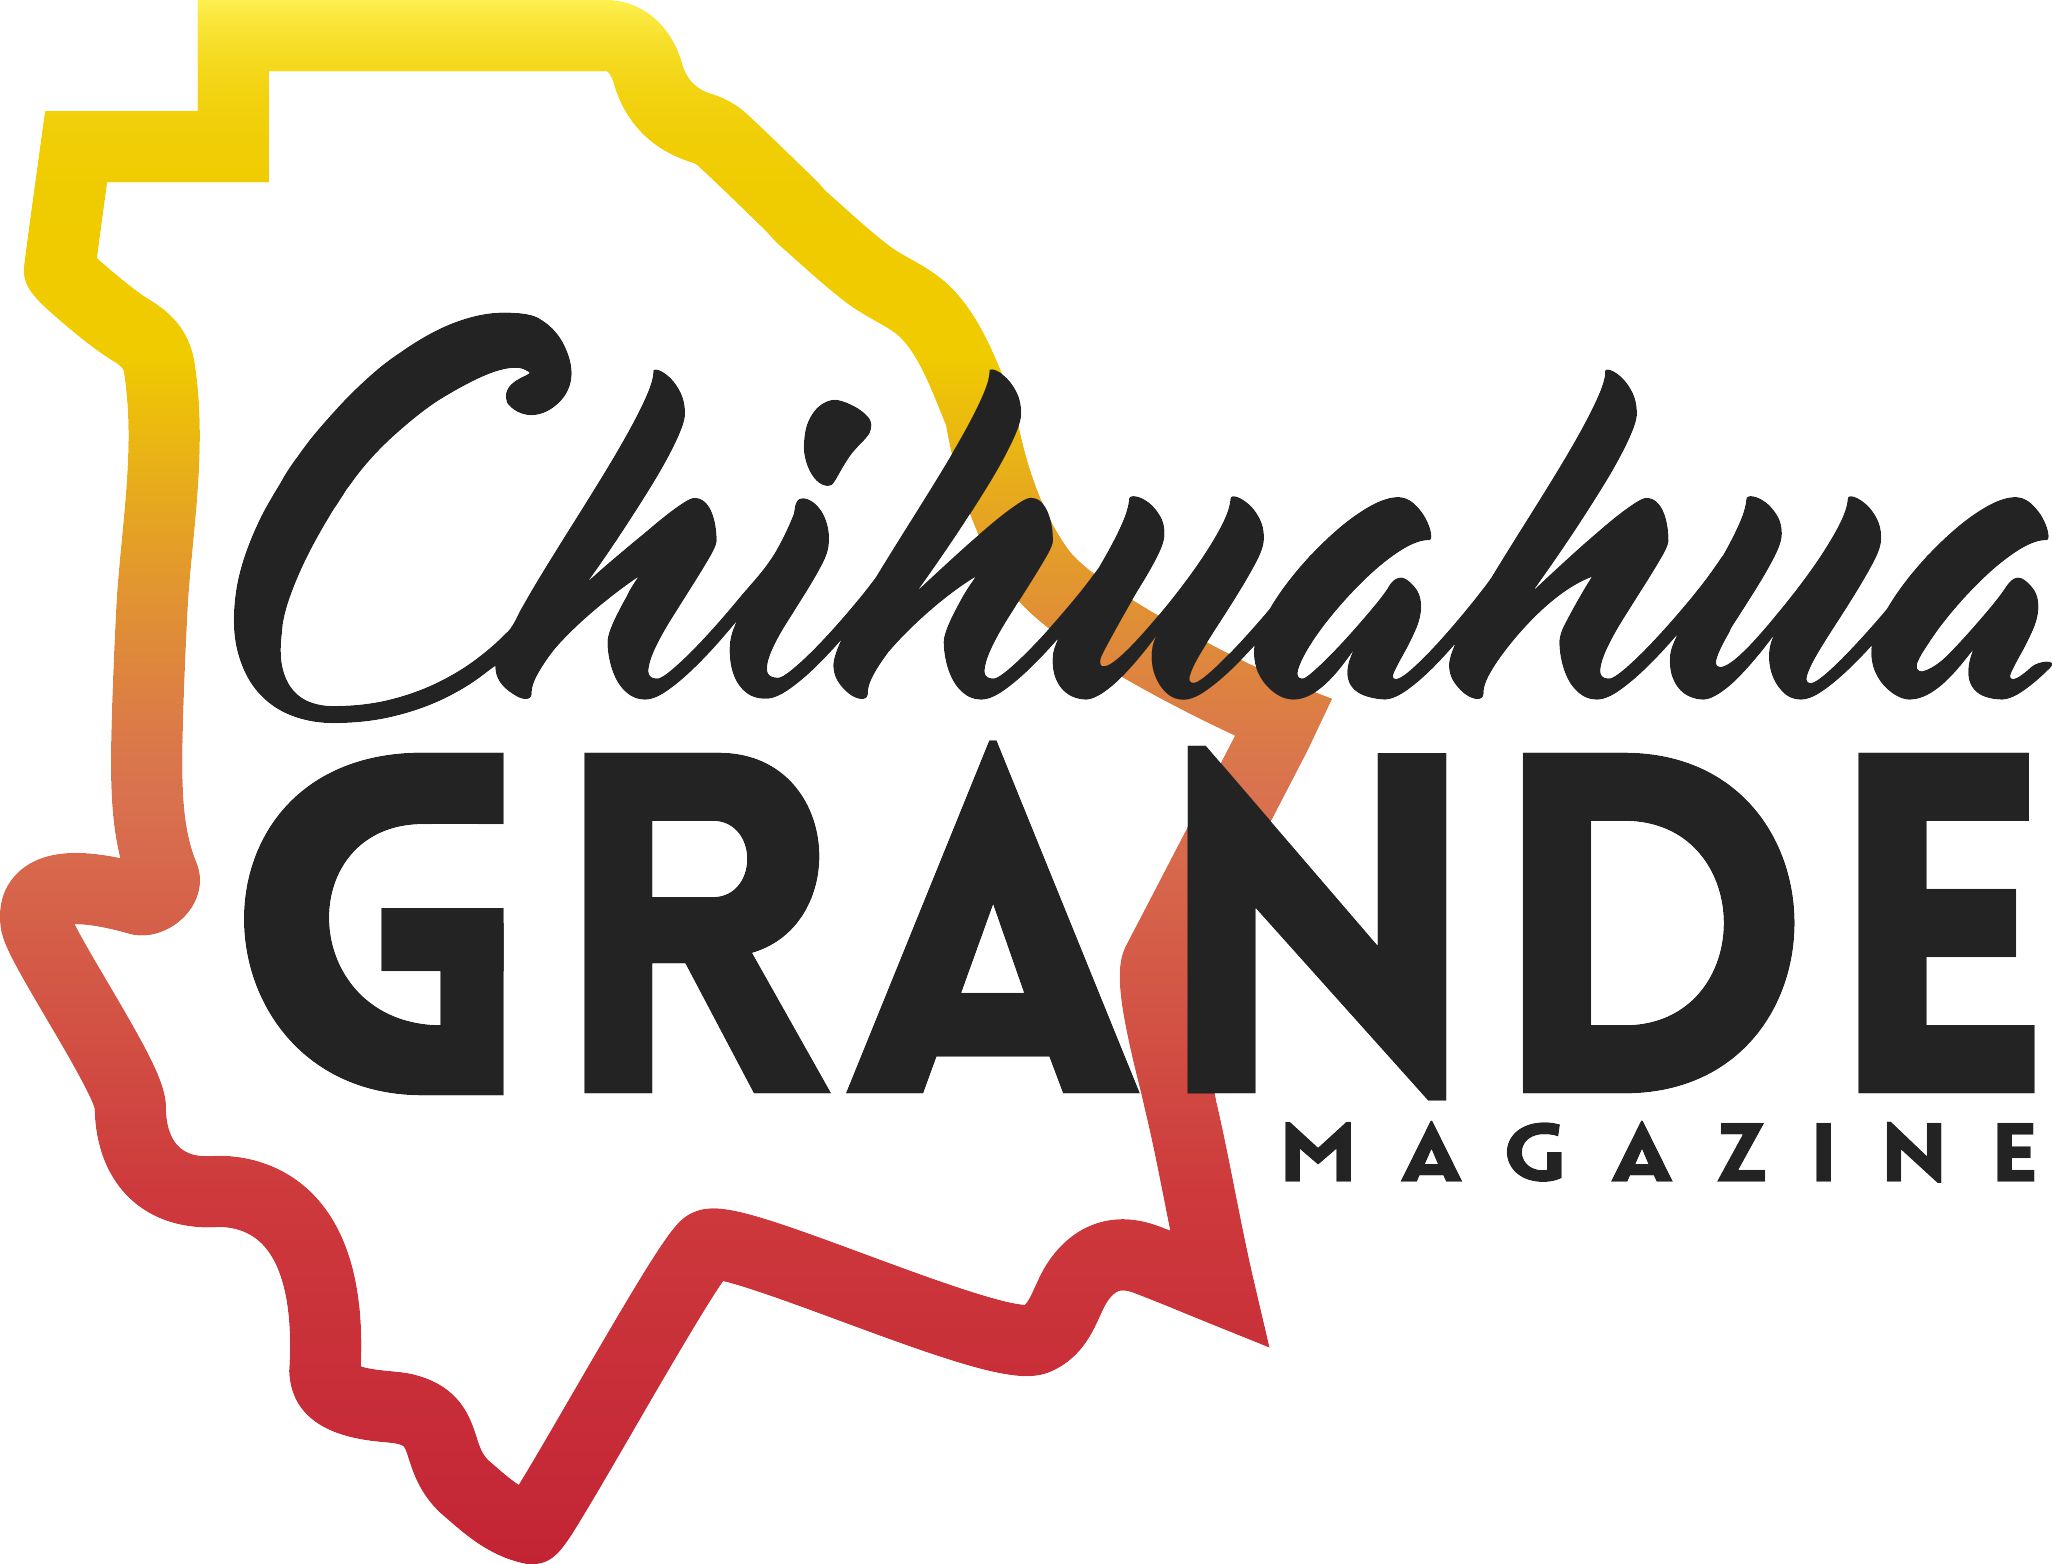 Chihuahua Grande